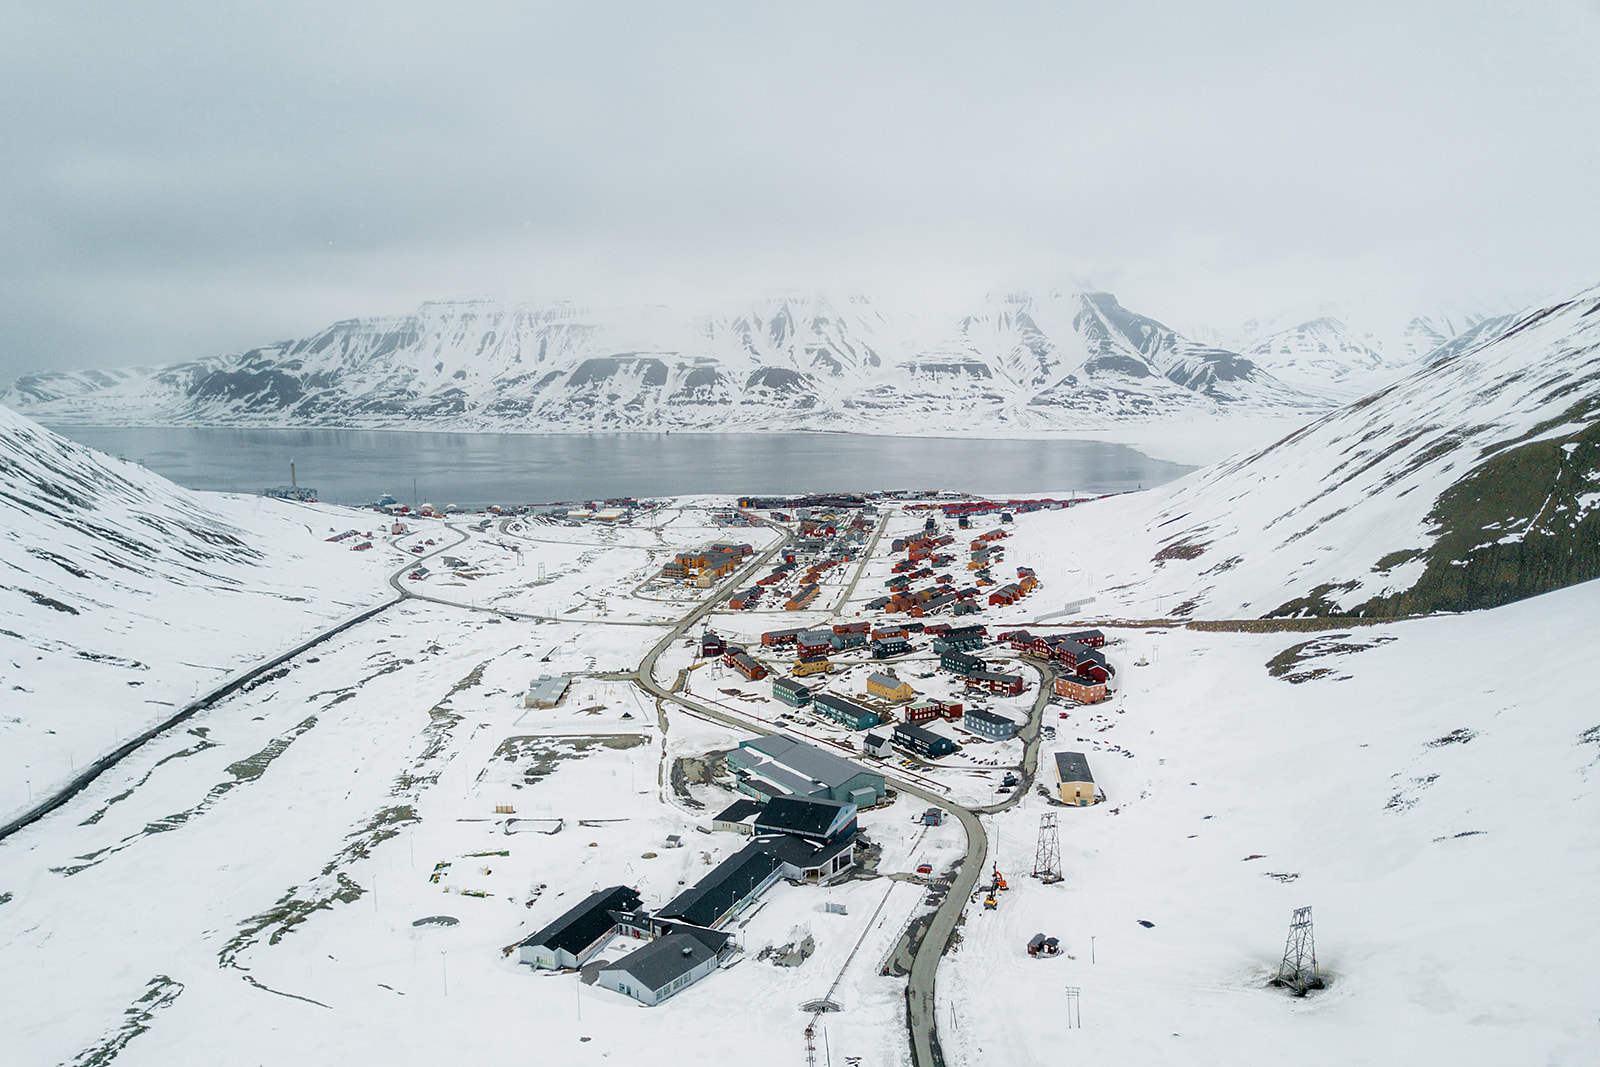 snow covered settlement of Longyearbyen on Svalbard